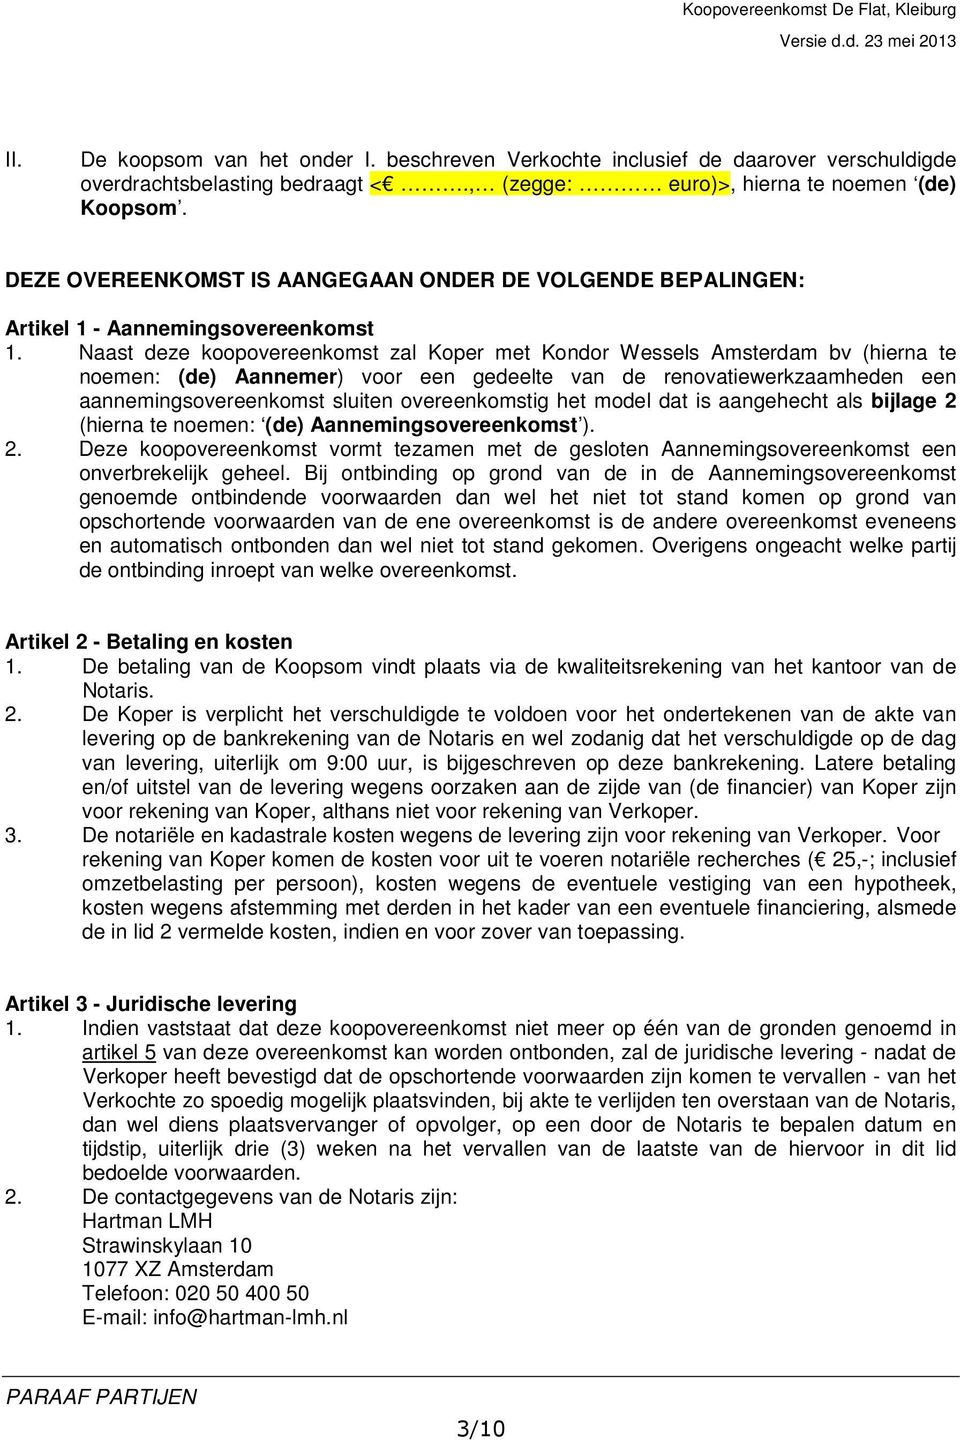 Naast deze koopovereenkomst zal Koper met Kondor Wessels Amsterdam bv (hierna te noemen: (de) Aannemer) voor een gedeelte van de renovatiewerkzaamheden een aannemingsovereenkomst sluiten